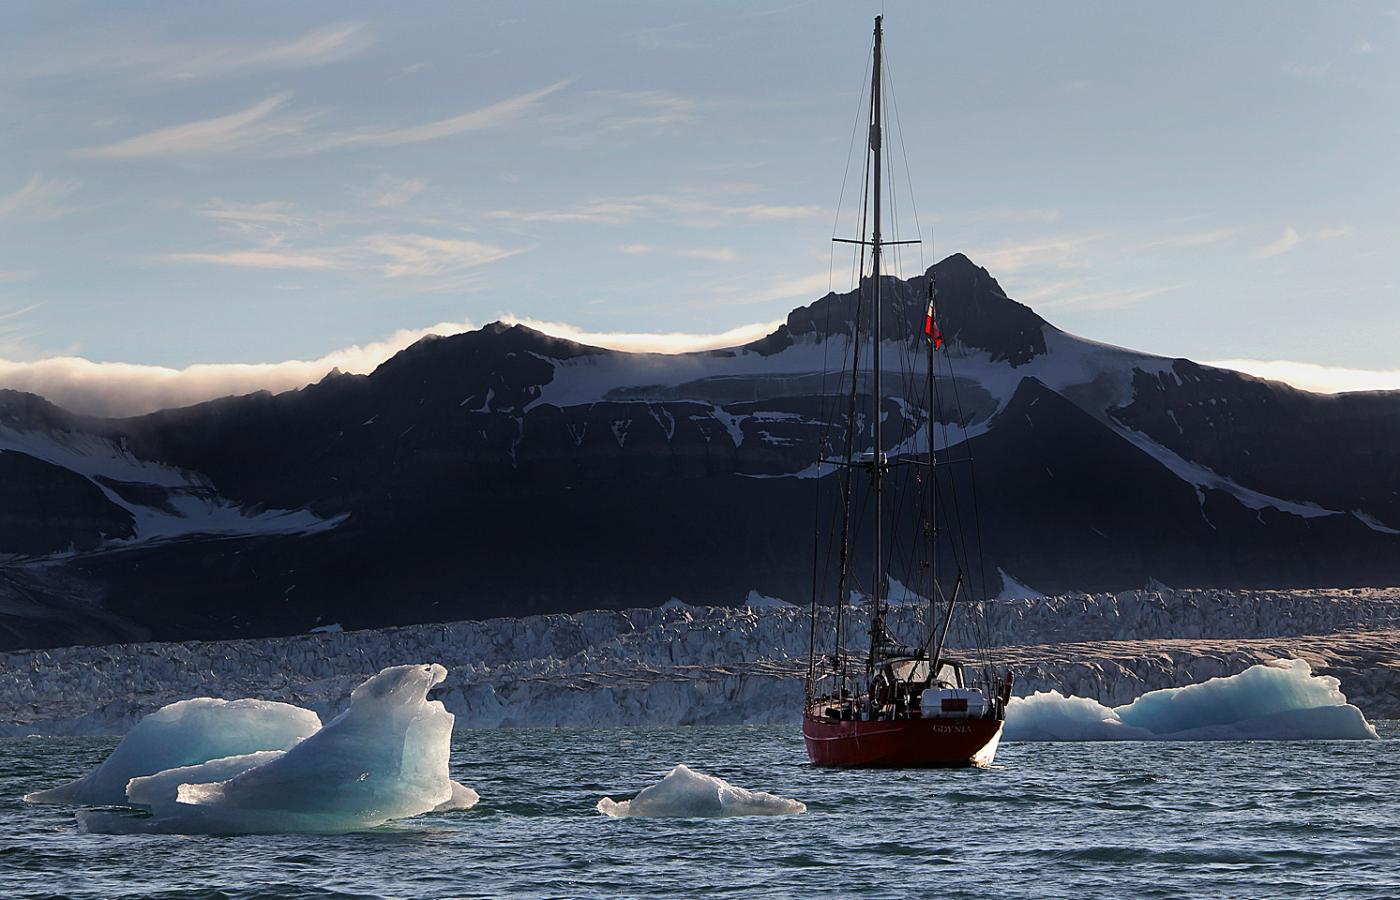 Jacht „Eltanin” od 11 lat kursuje po wodach Svalbardu - archipelagu, w którego skład wchodzi Spitsbergen.